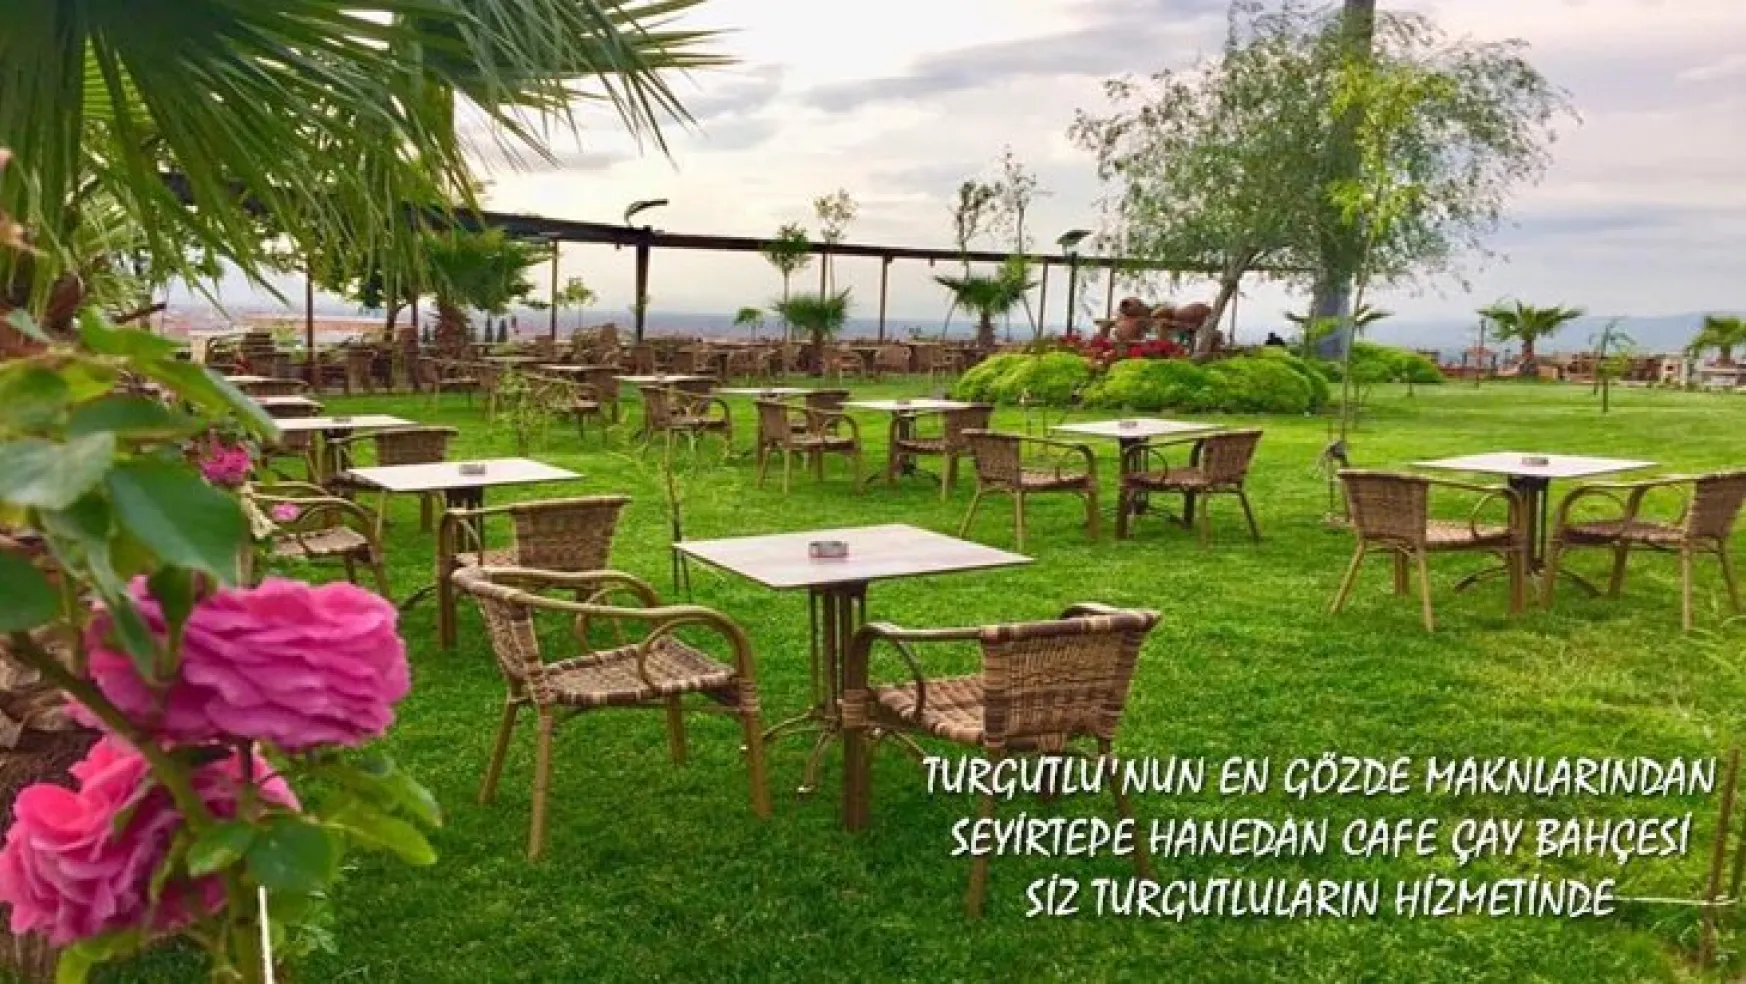 Turgutlu Hanedan Cafe Restaurant en güzel manzara ve en kaliteli hizmet anlayışıyla sizleri bekliyor